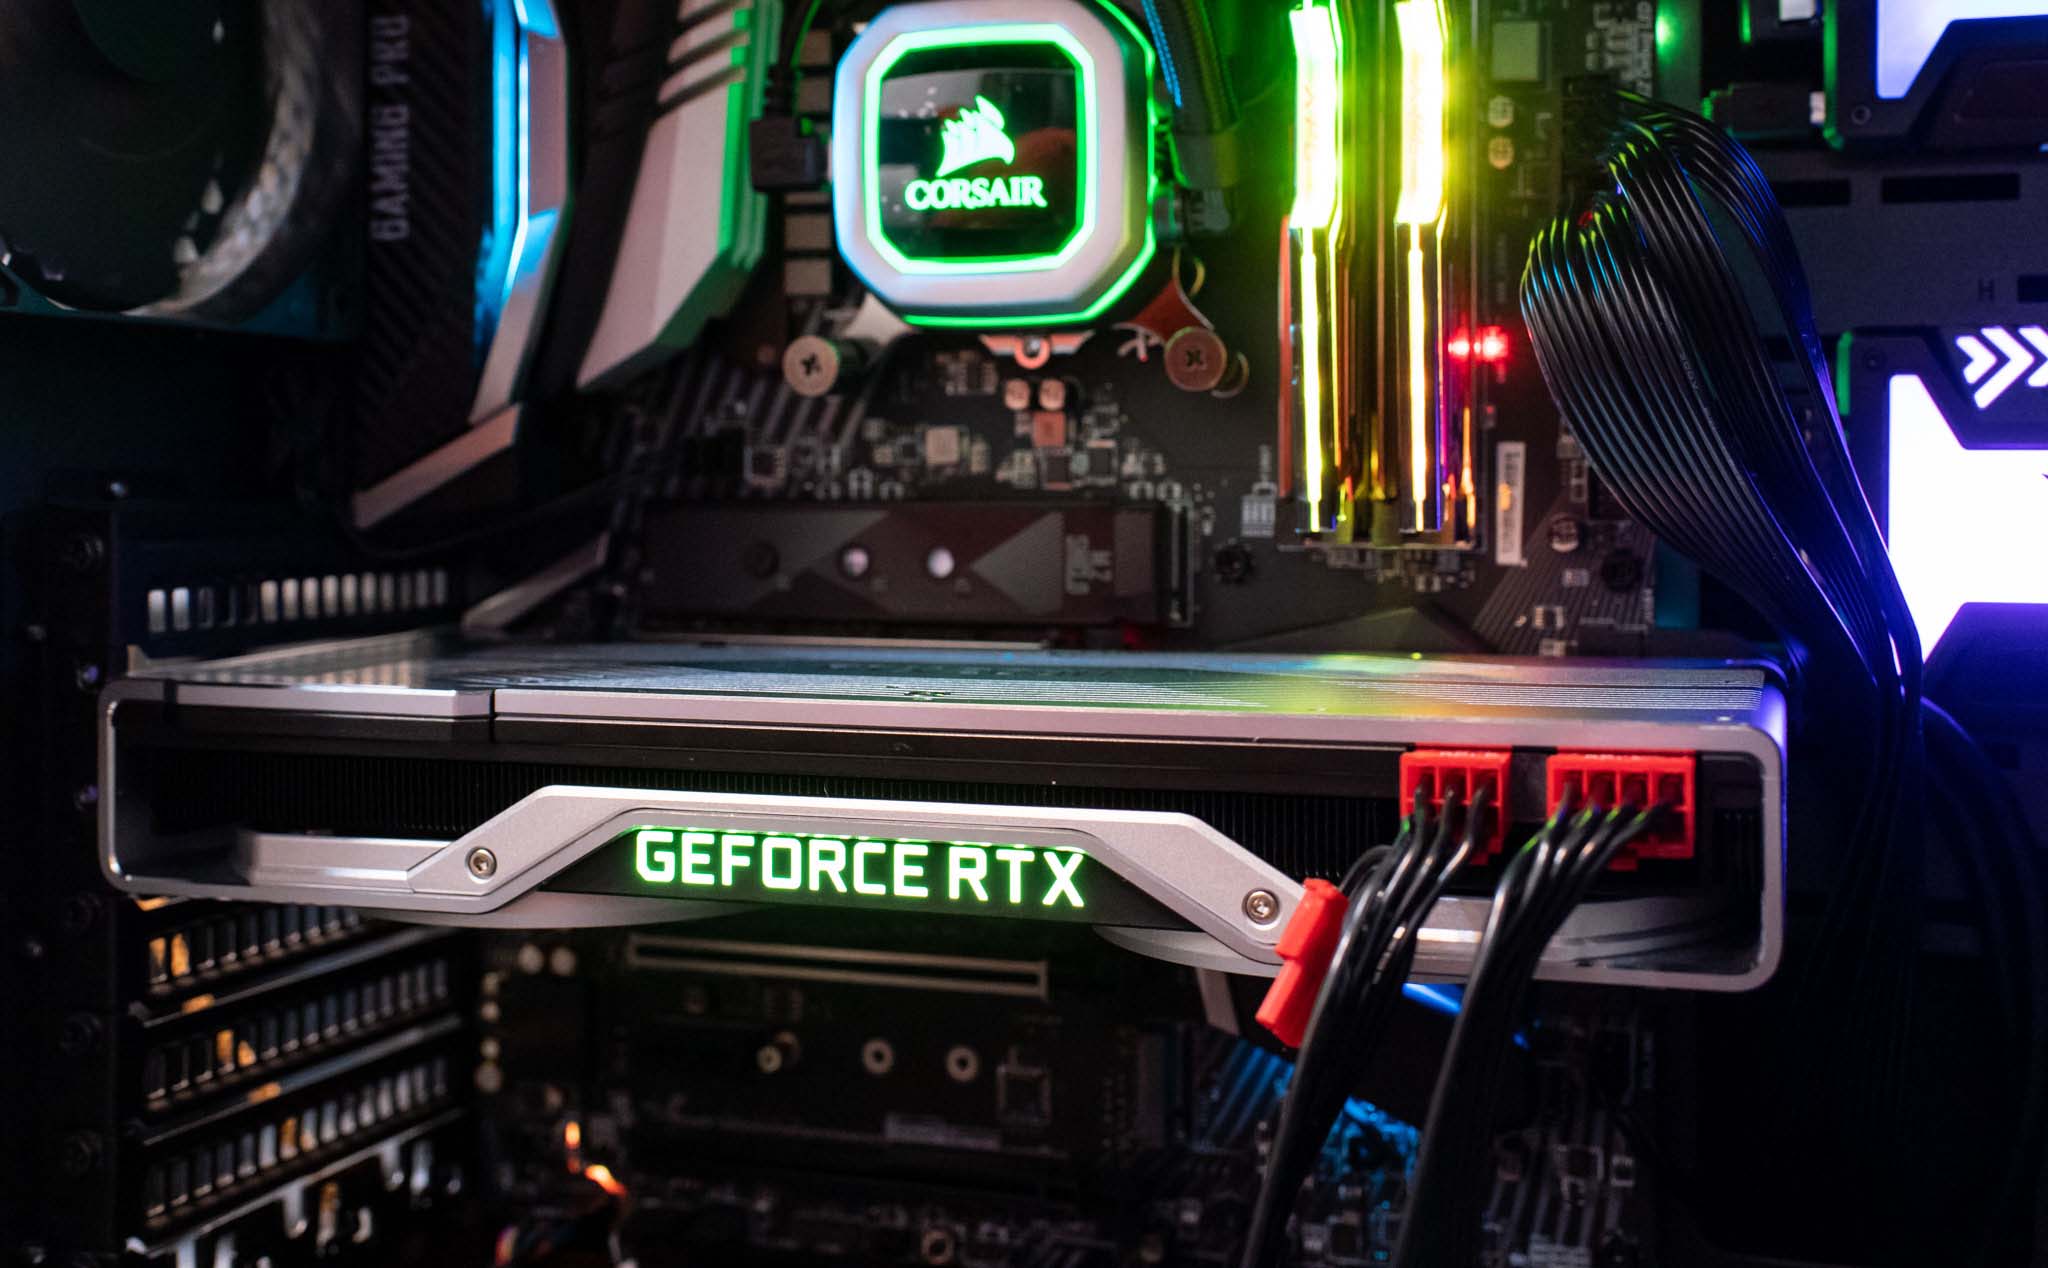 Đánh giá GeForce RTX 2080 FE: hiệu năng như GTX 1080 Ti, Ray Tracing sẽ là xu hướng!